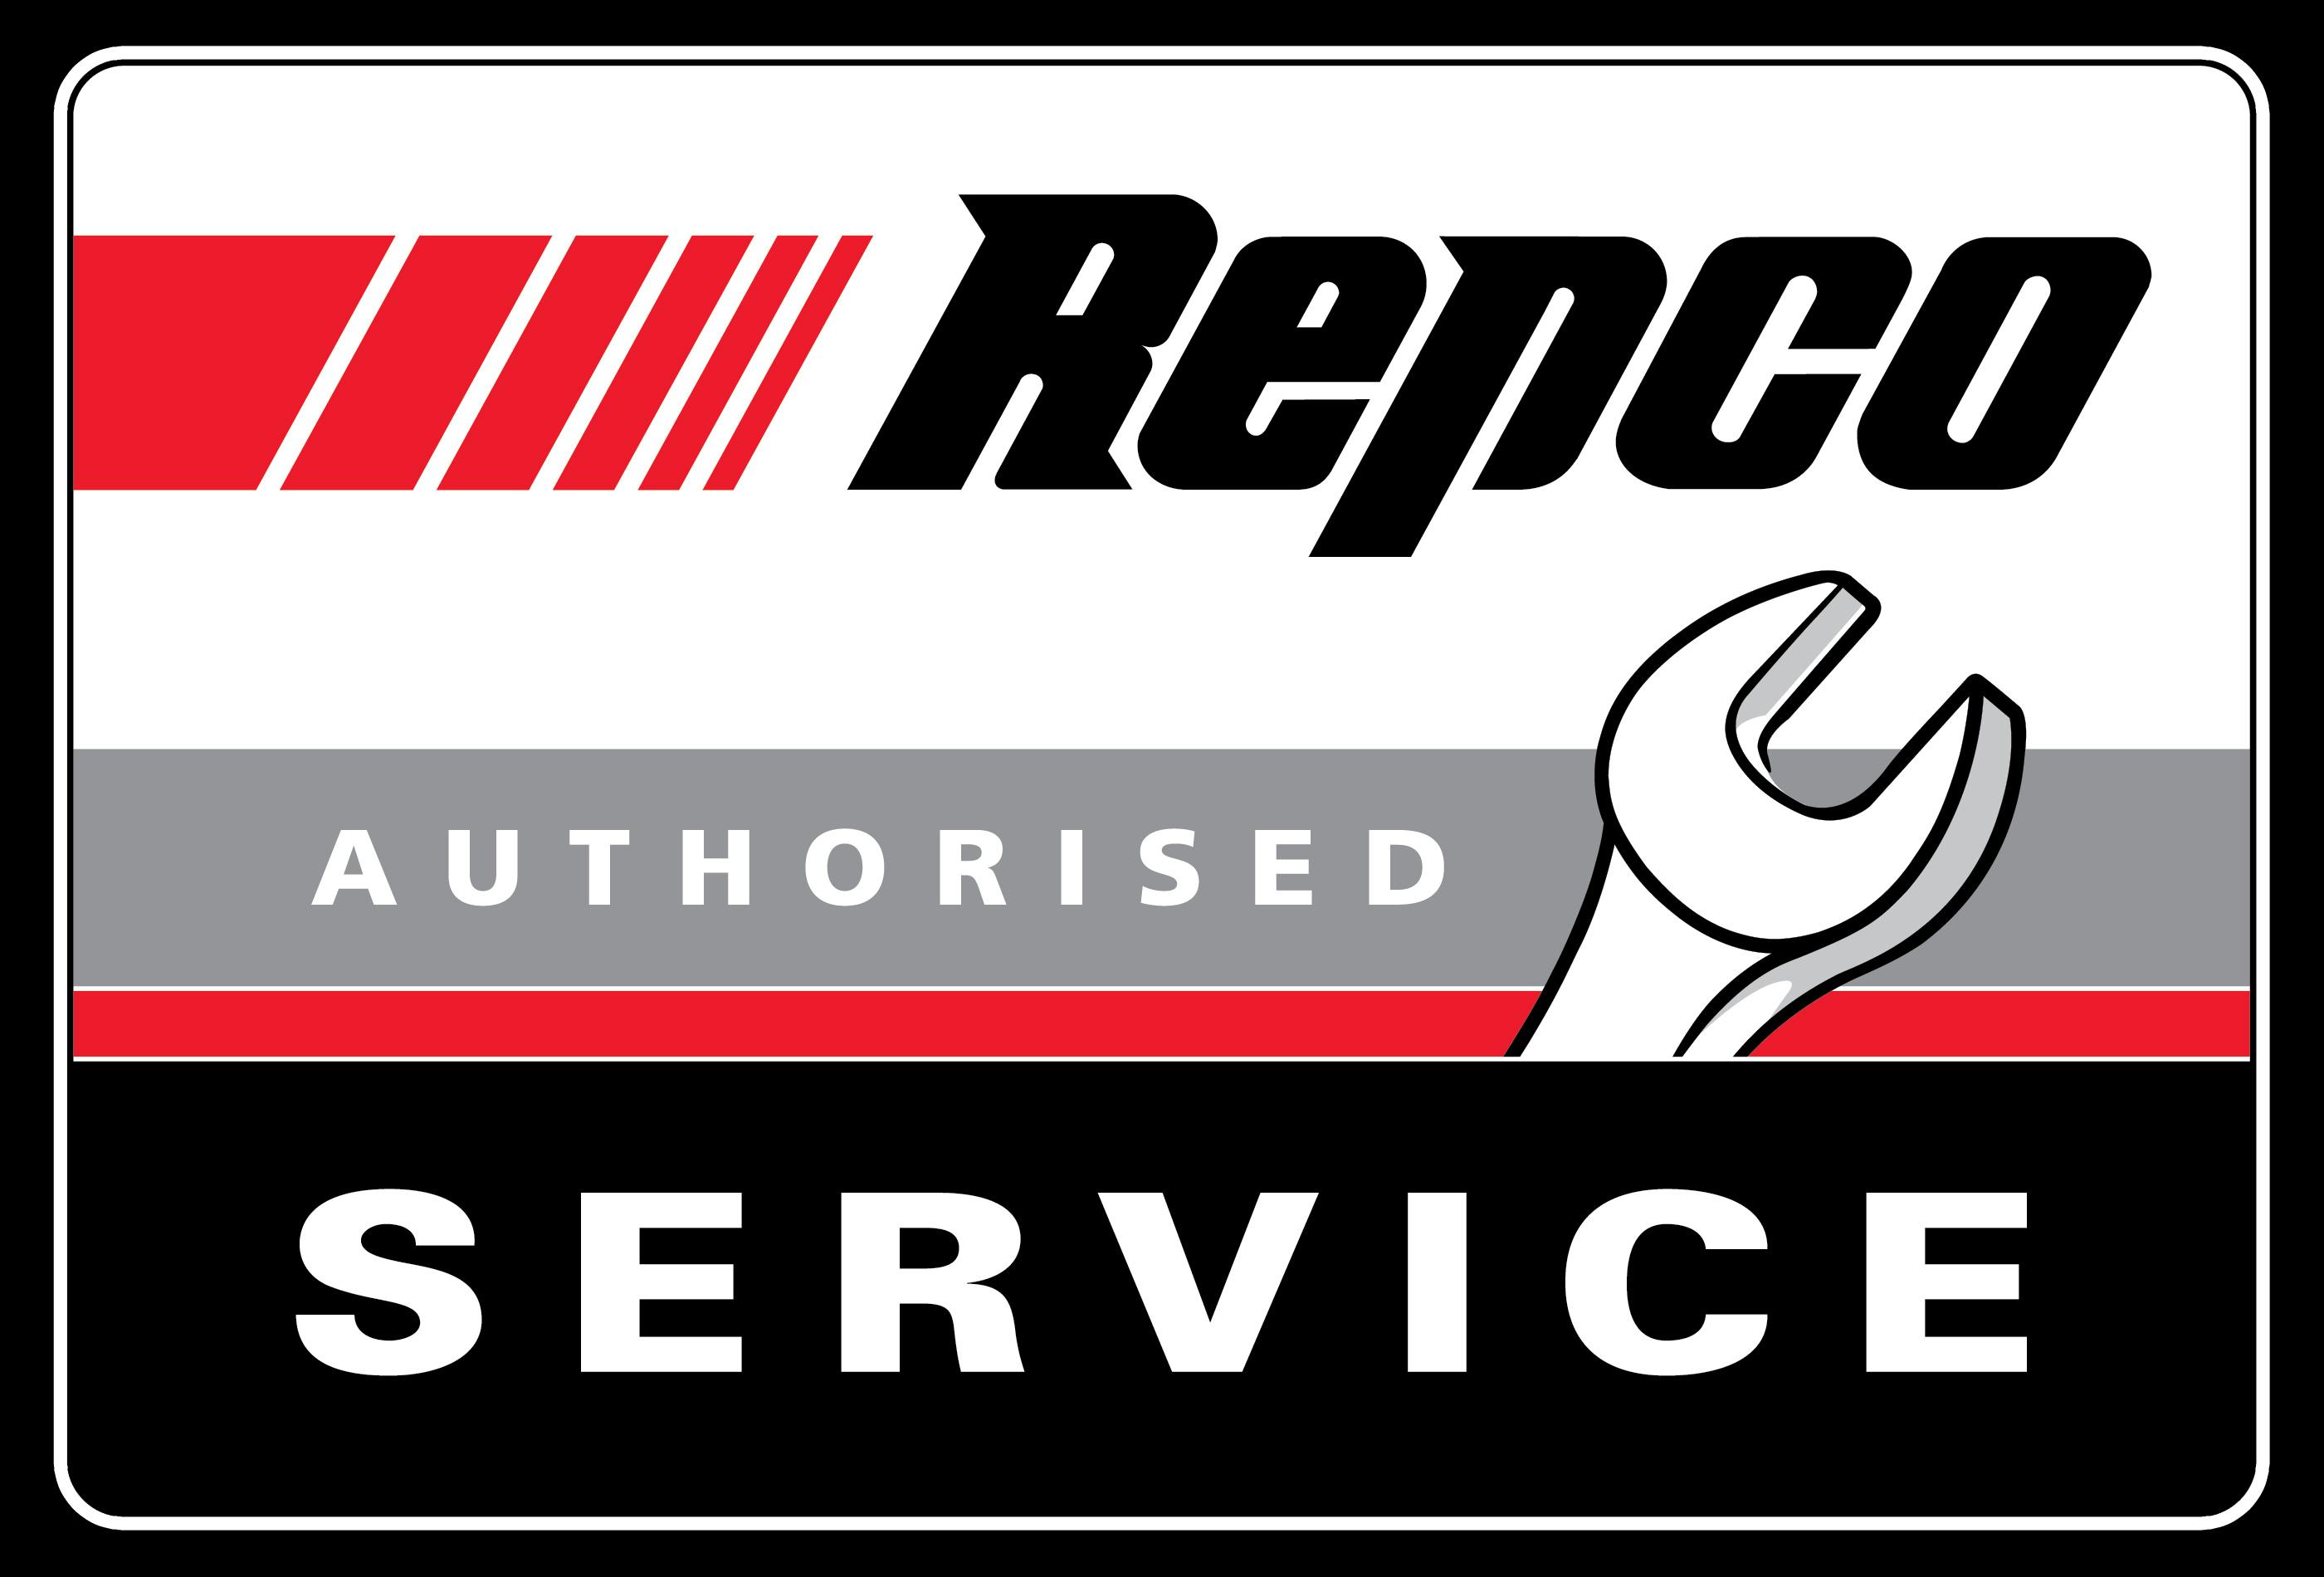 Repco Authorised Service 